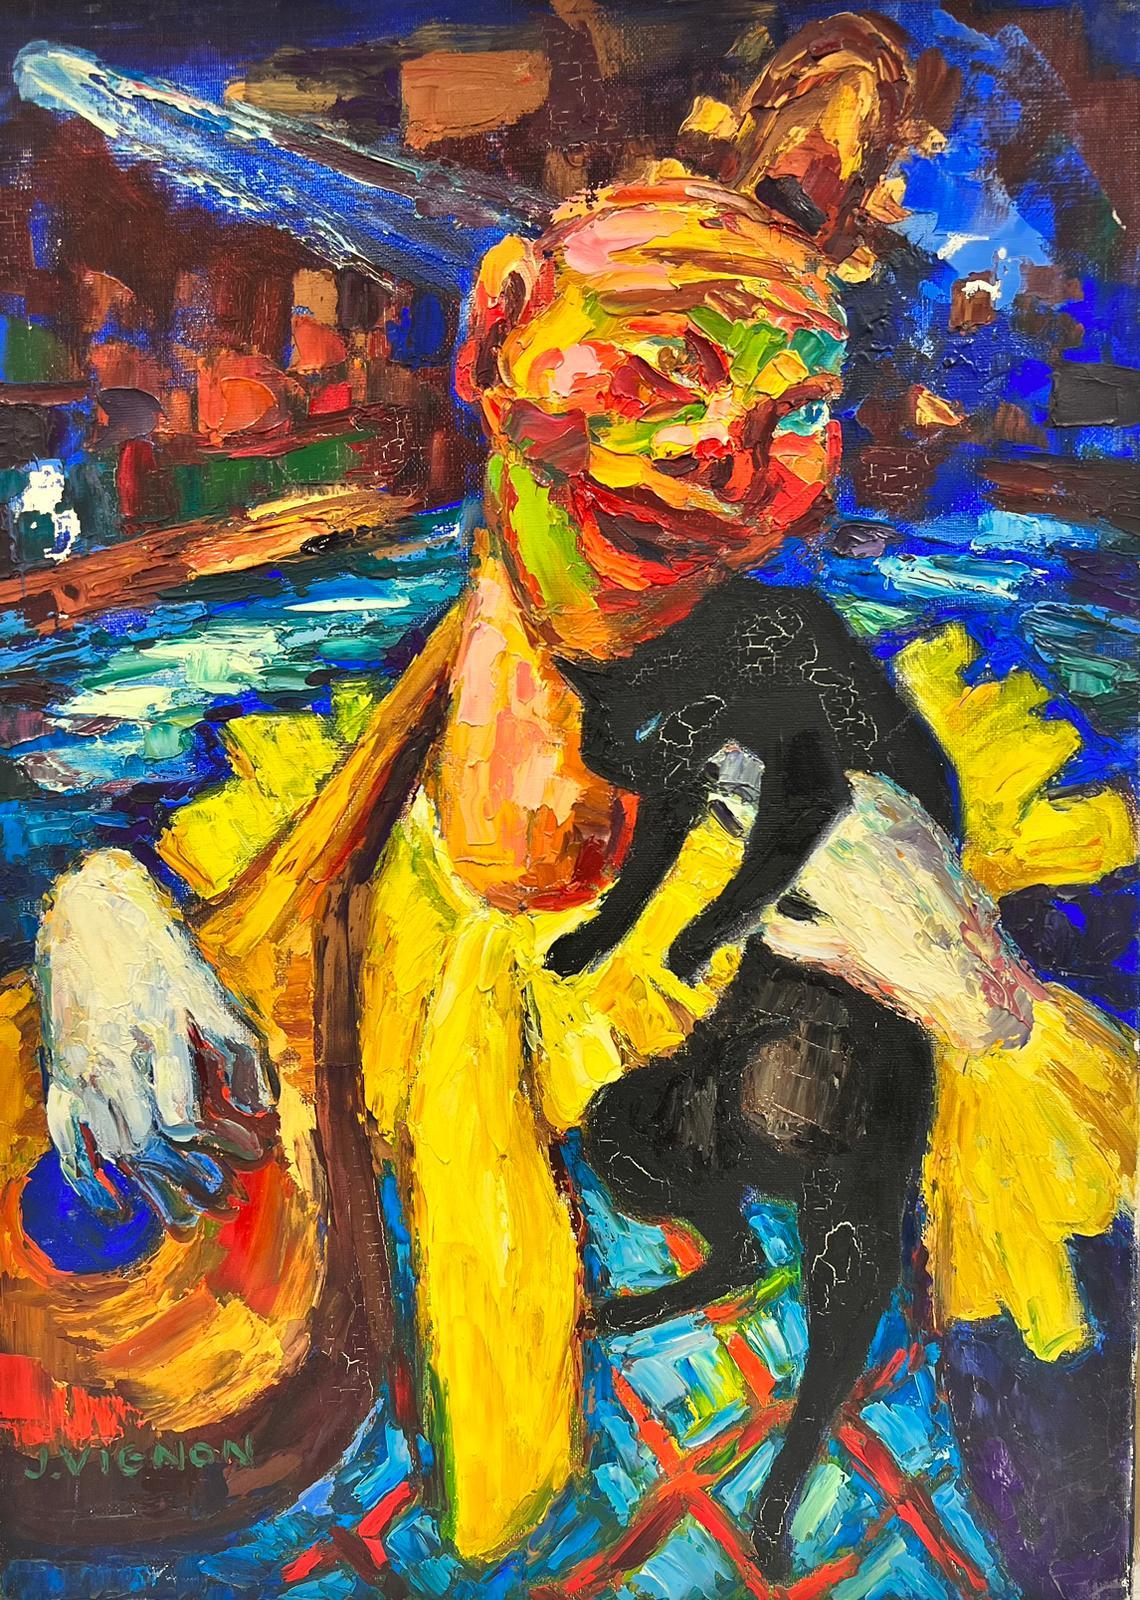 Abstract Painting Josine Vignon - Tableau de clown abstrait jouant du clown, huile post-impressionniste signe de Tzouras 